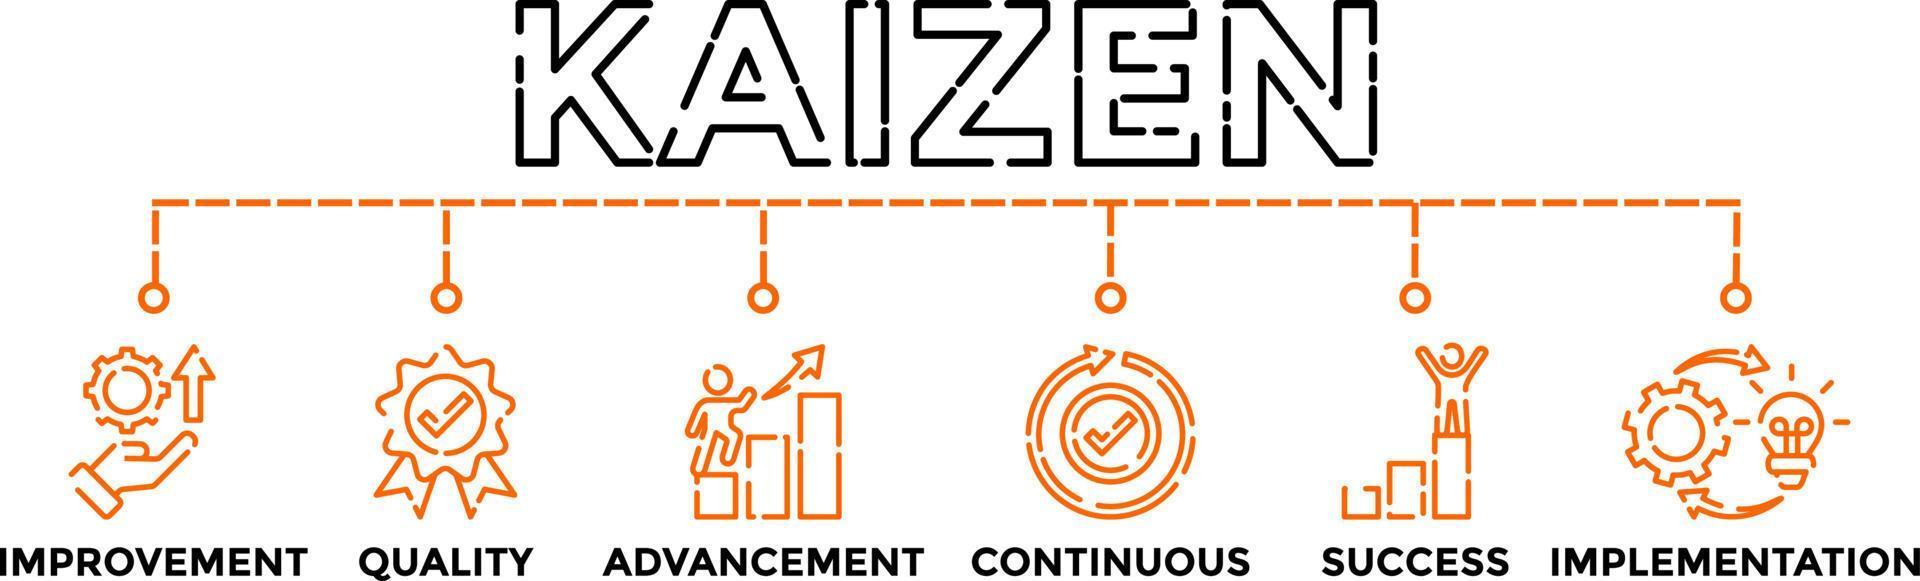 kaizen formazione concetto bandiera vettore illustrazione con icone. attività commerciale filosofia e aziendale strategia di continuo miglioramento.